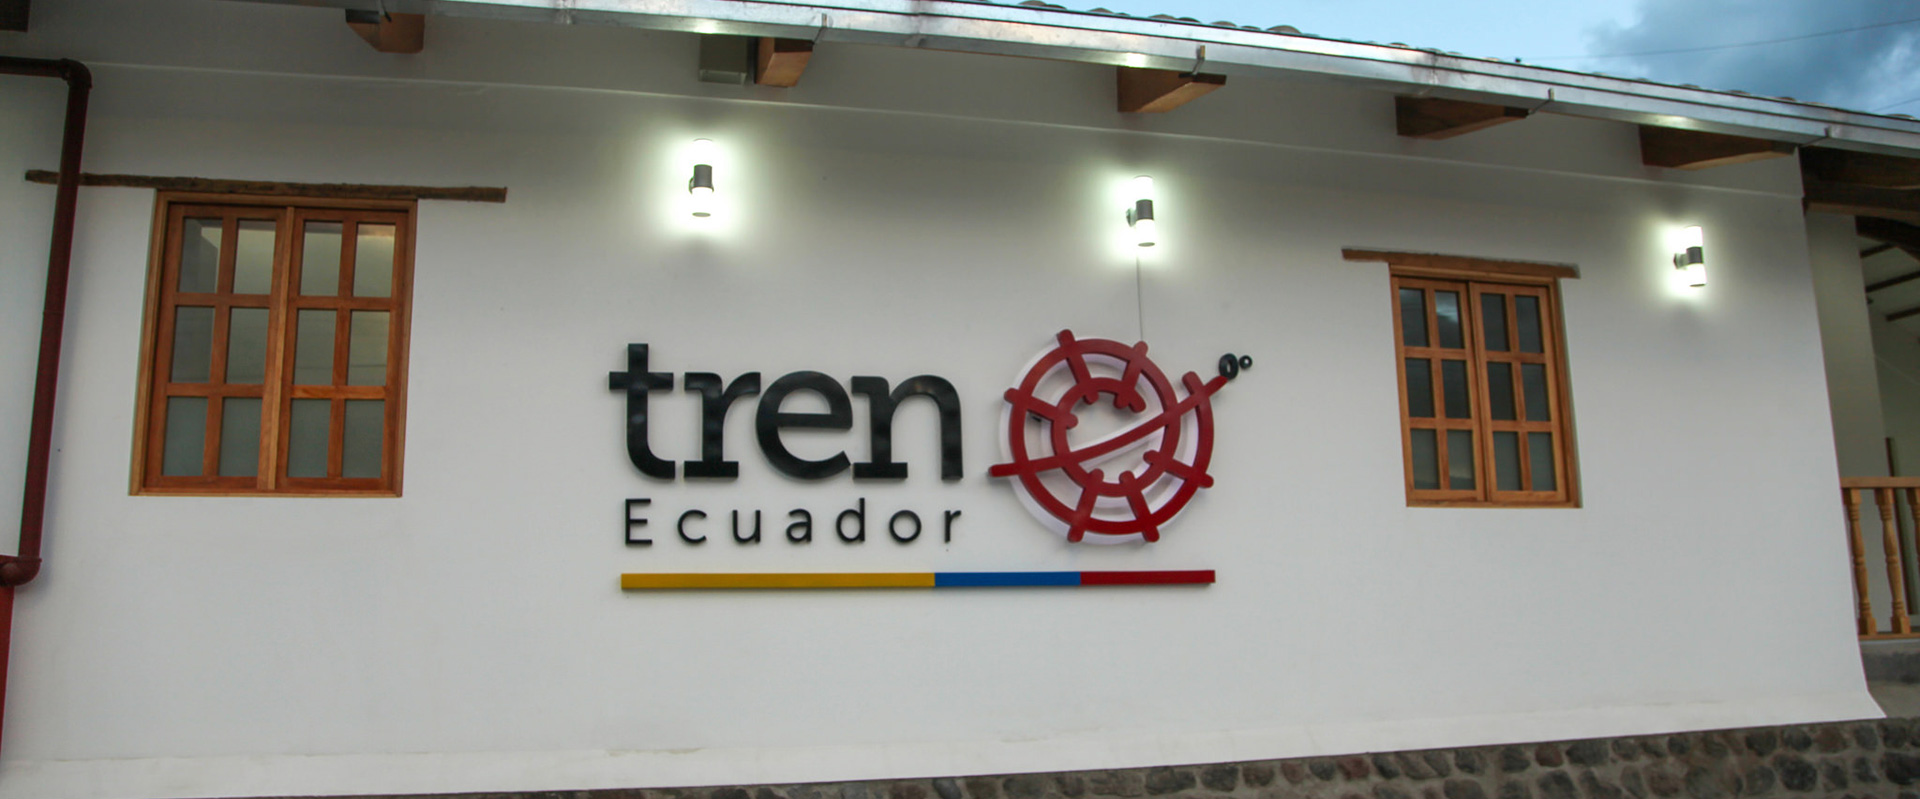 Ecuador Train Station